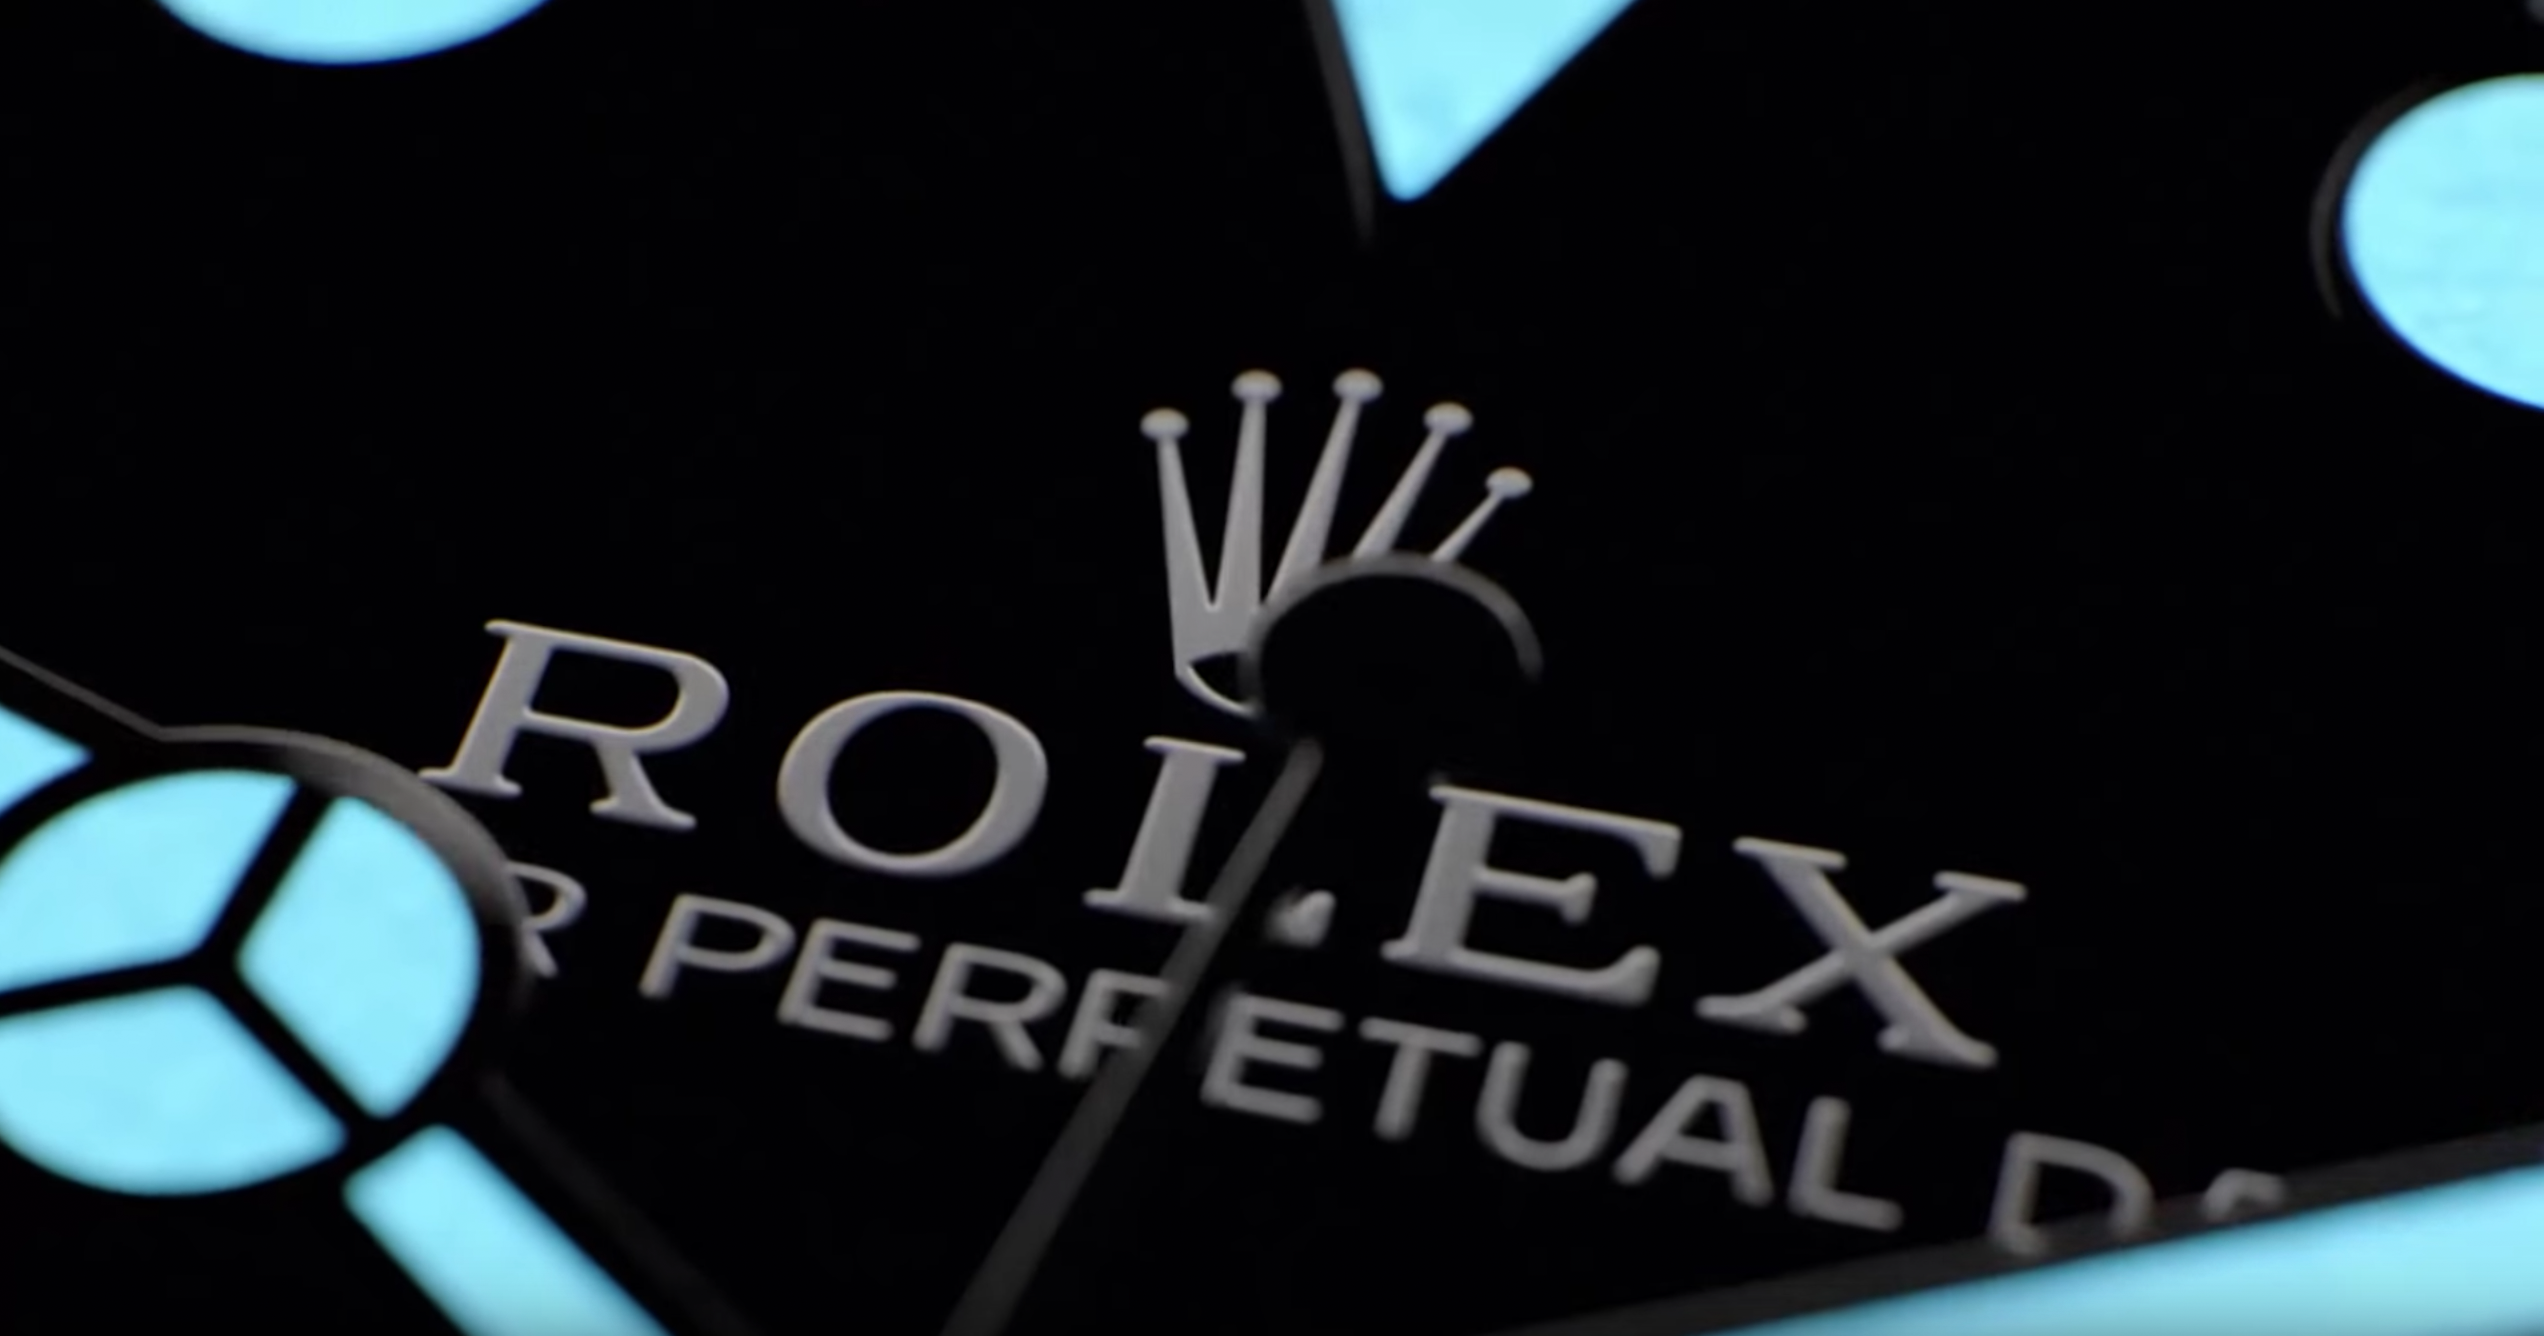 Rolex schließt seine Produktion wegen Corona.